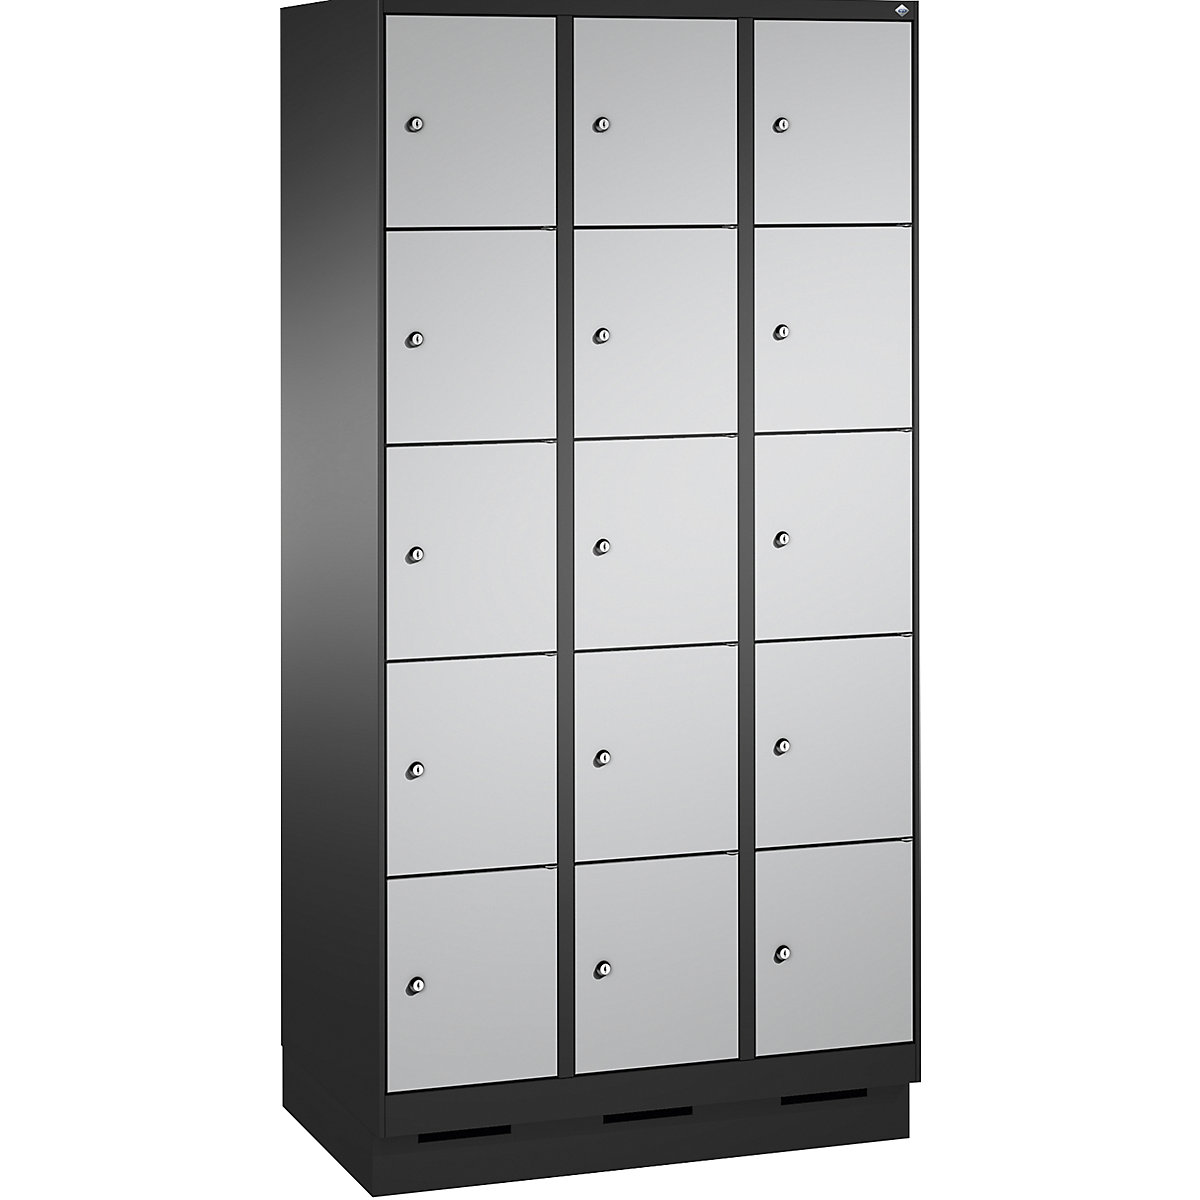 Armoire à casiers sur socle EVOLO – C+P, 3 compartiments, 5 casiers chacun, largeur compartiments 300 mm, gris noir / aluminium-4